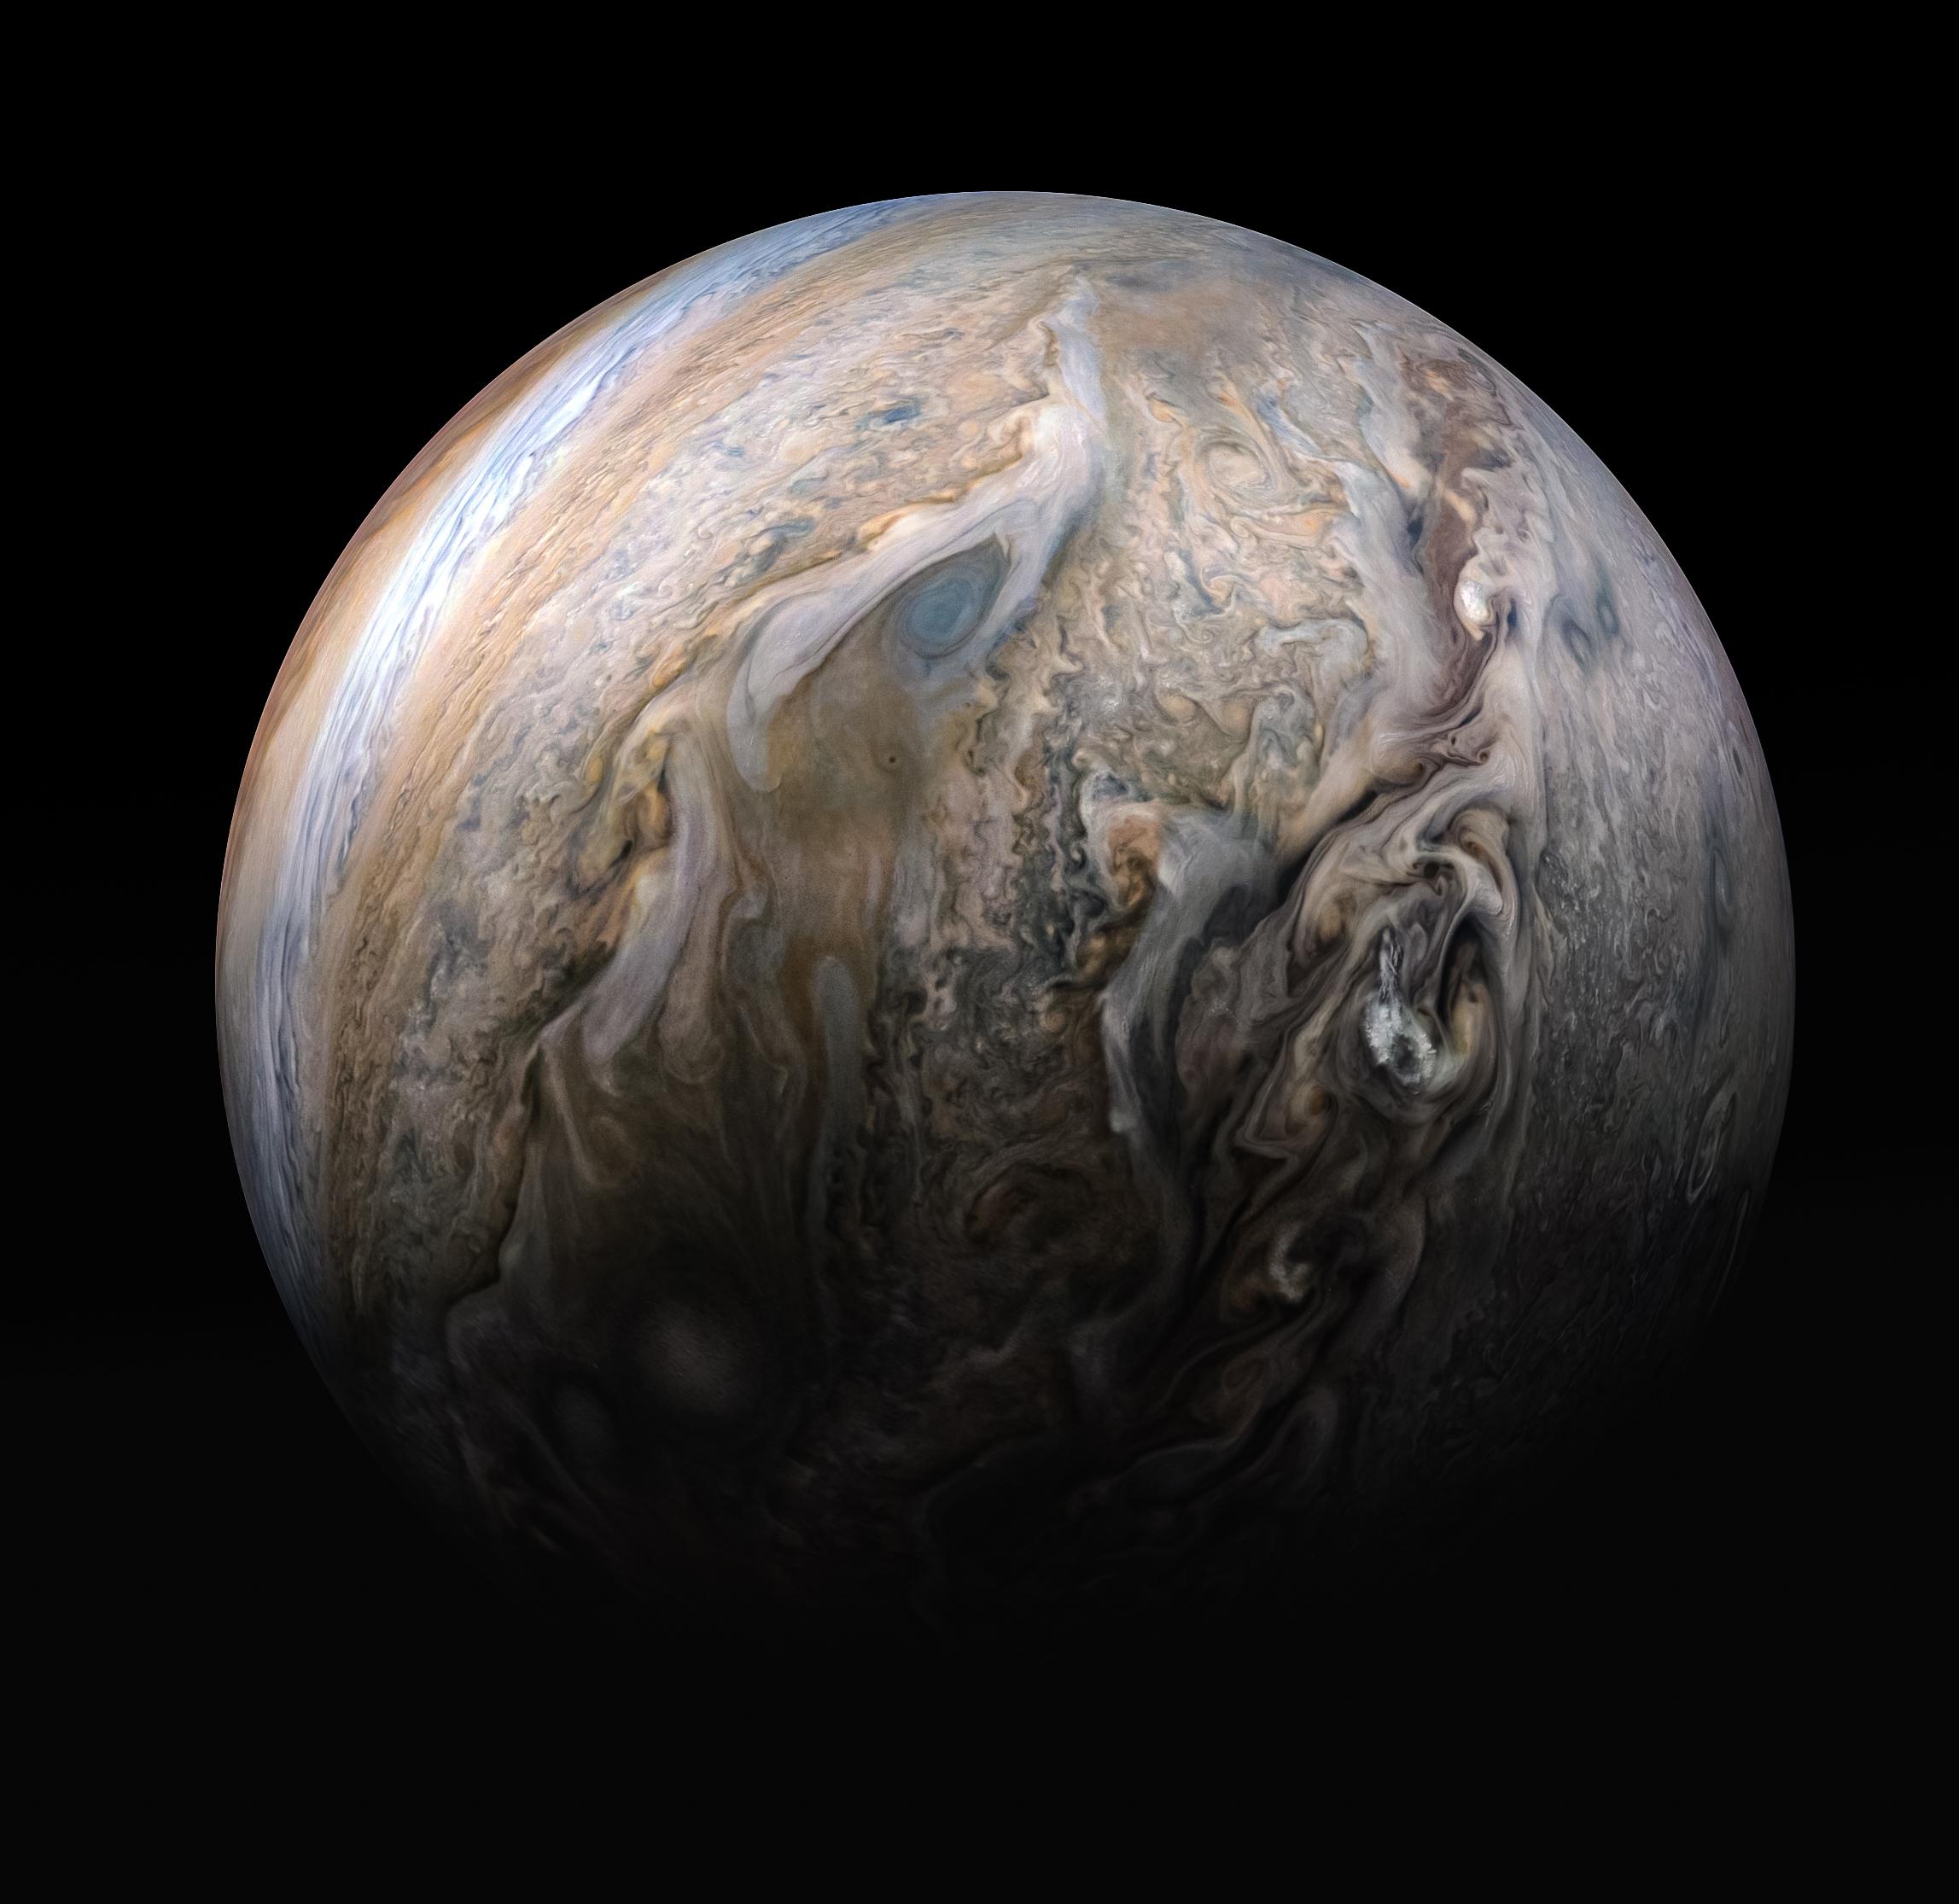 PIA22949: Tumultuous Clouds of Jupiter